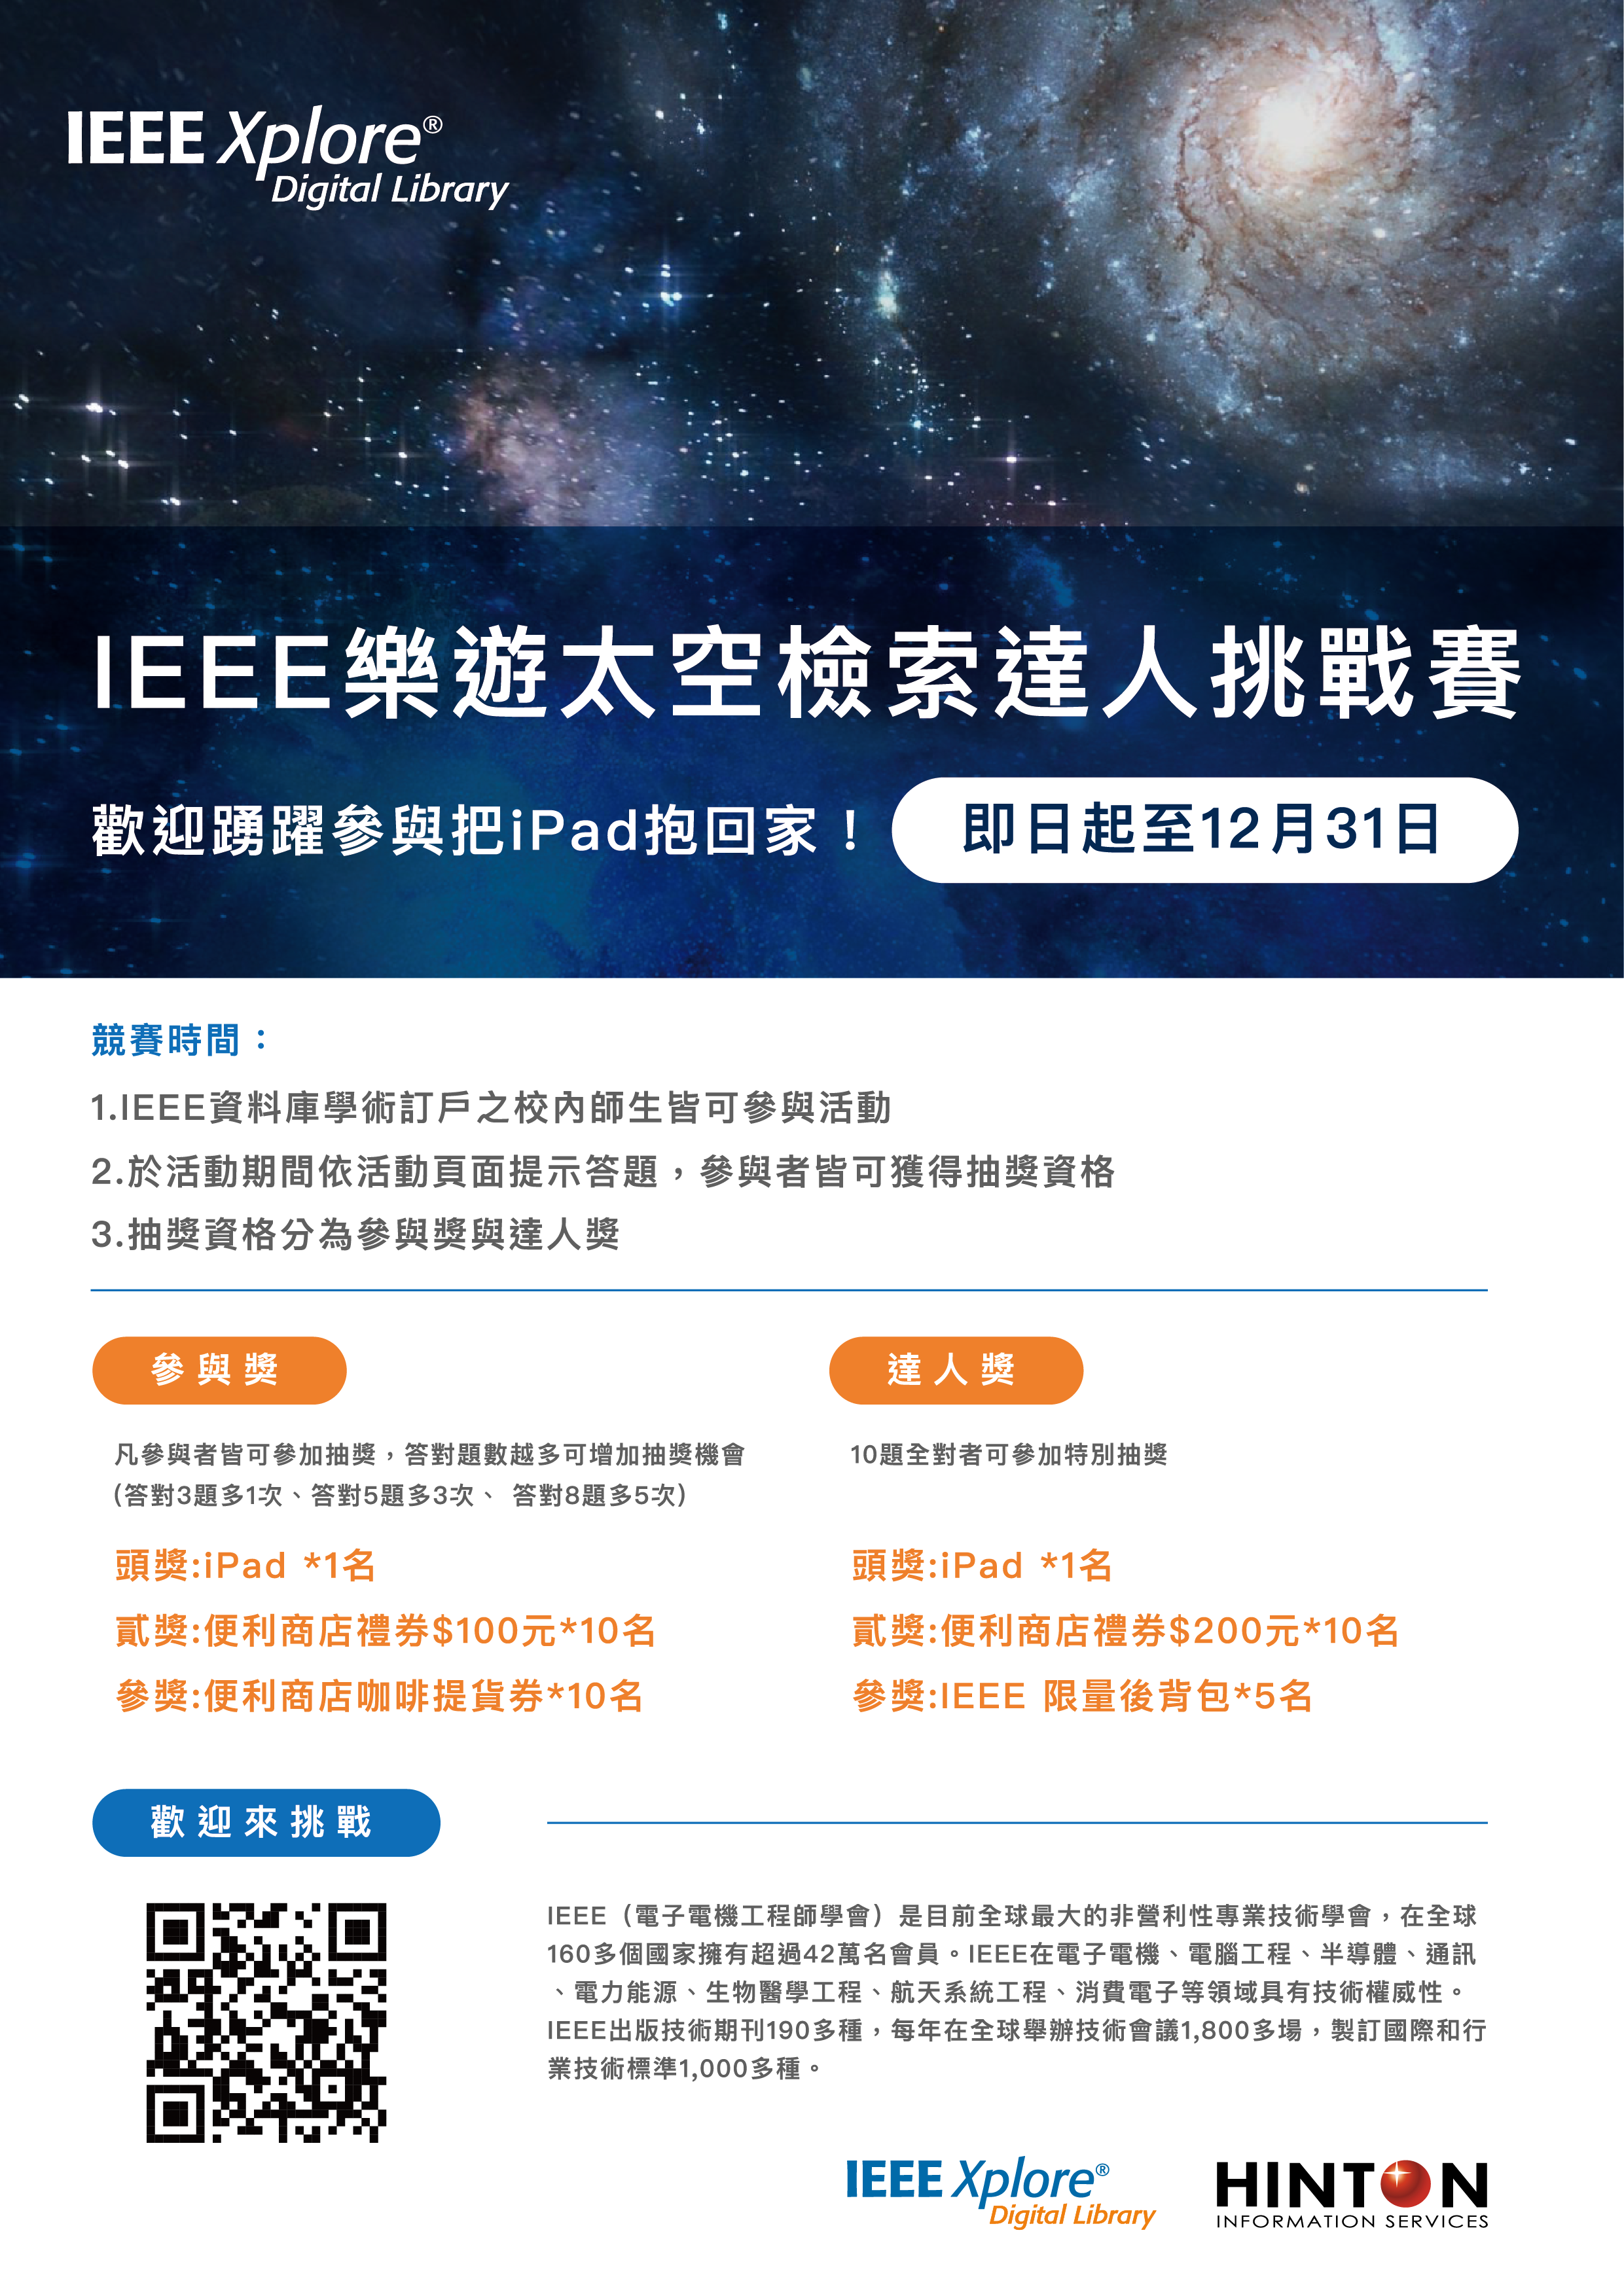 【活動】IEEE有獎徵答|樂遊太空達人檢索挑戰賽